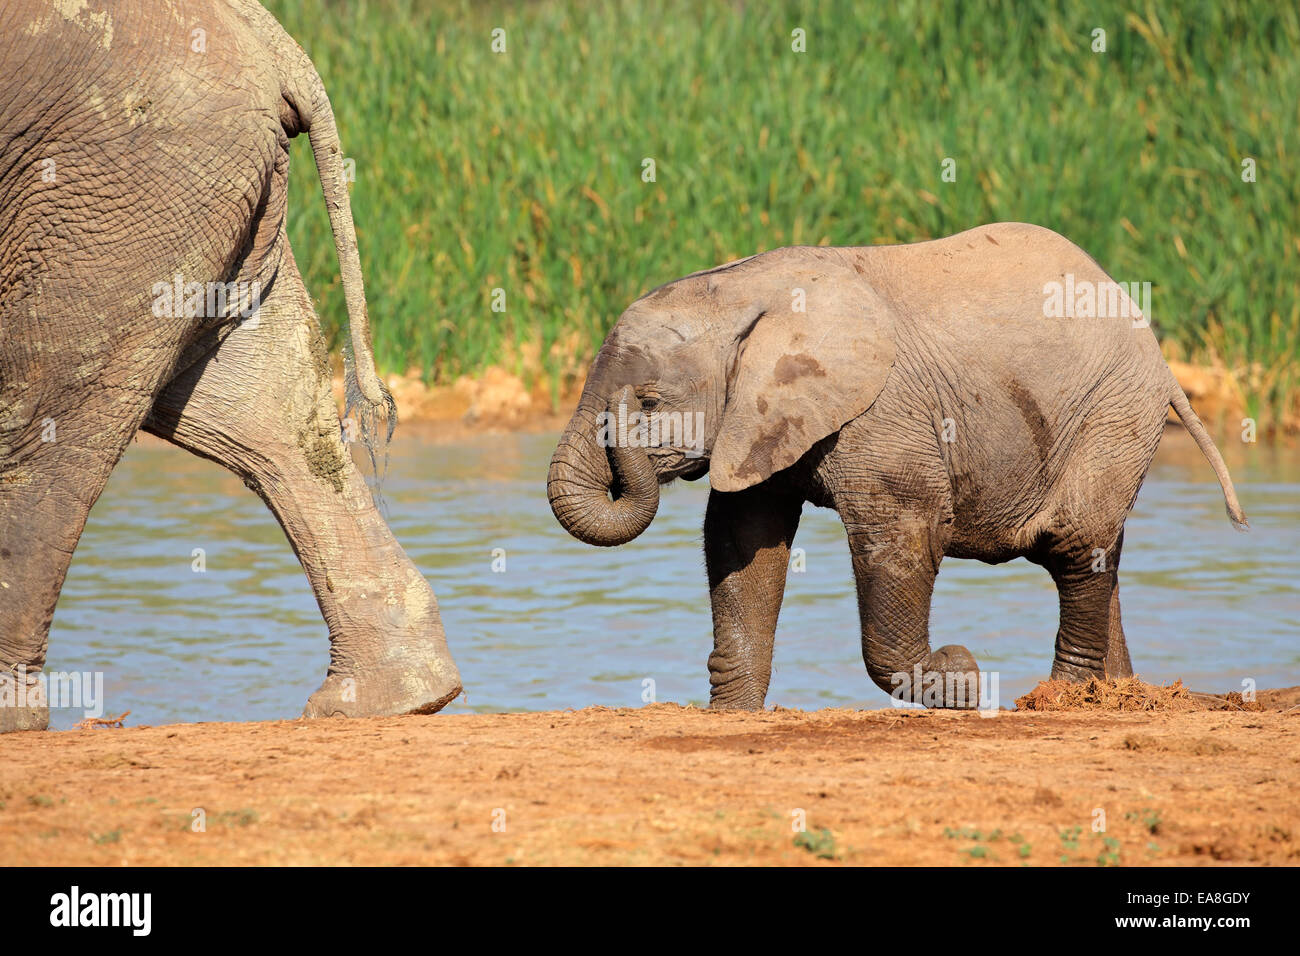 Un bébé éléphant africain (Loxodonta africana) à un point d'Addo Elephant National Park, Afrique du Sud Banque D'Images